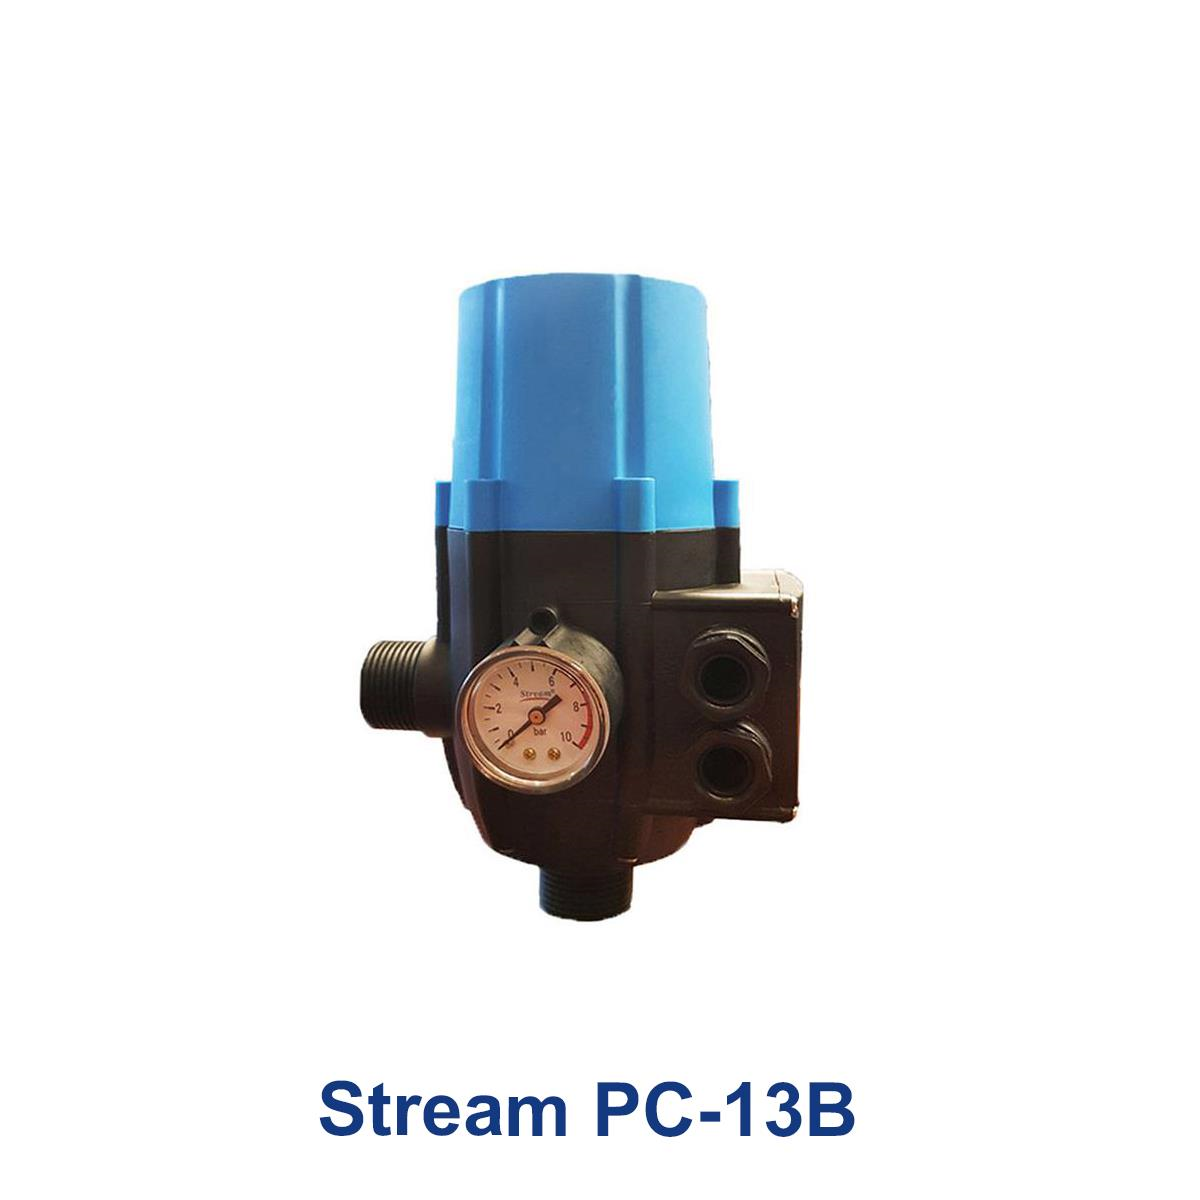 Stream-PC-13B